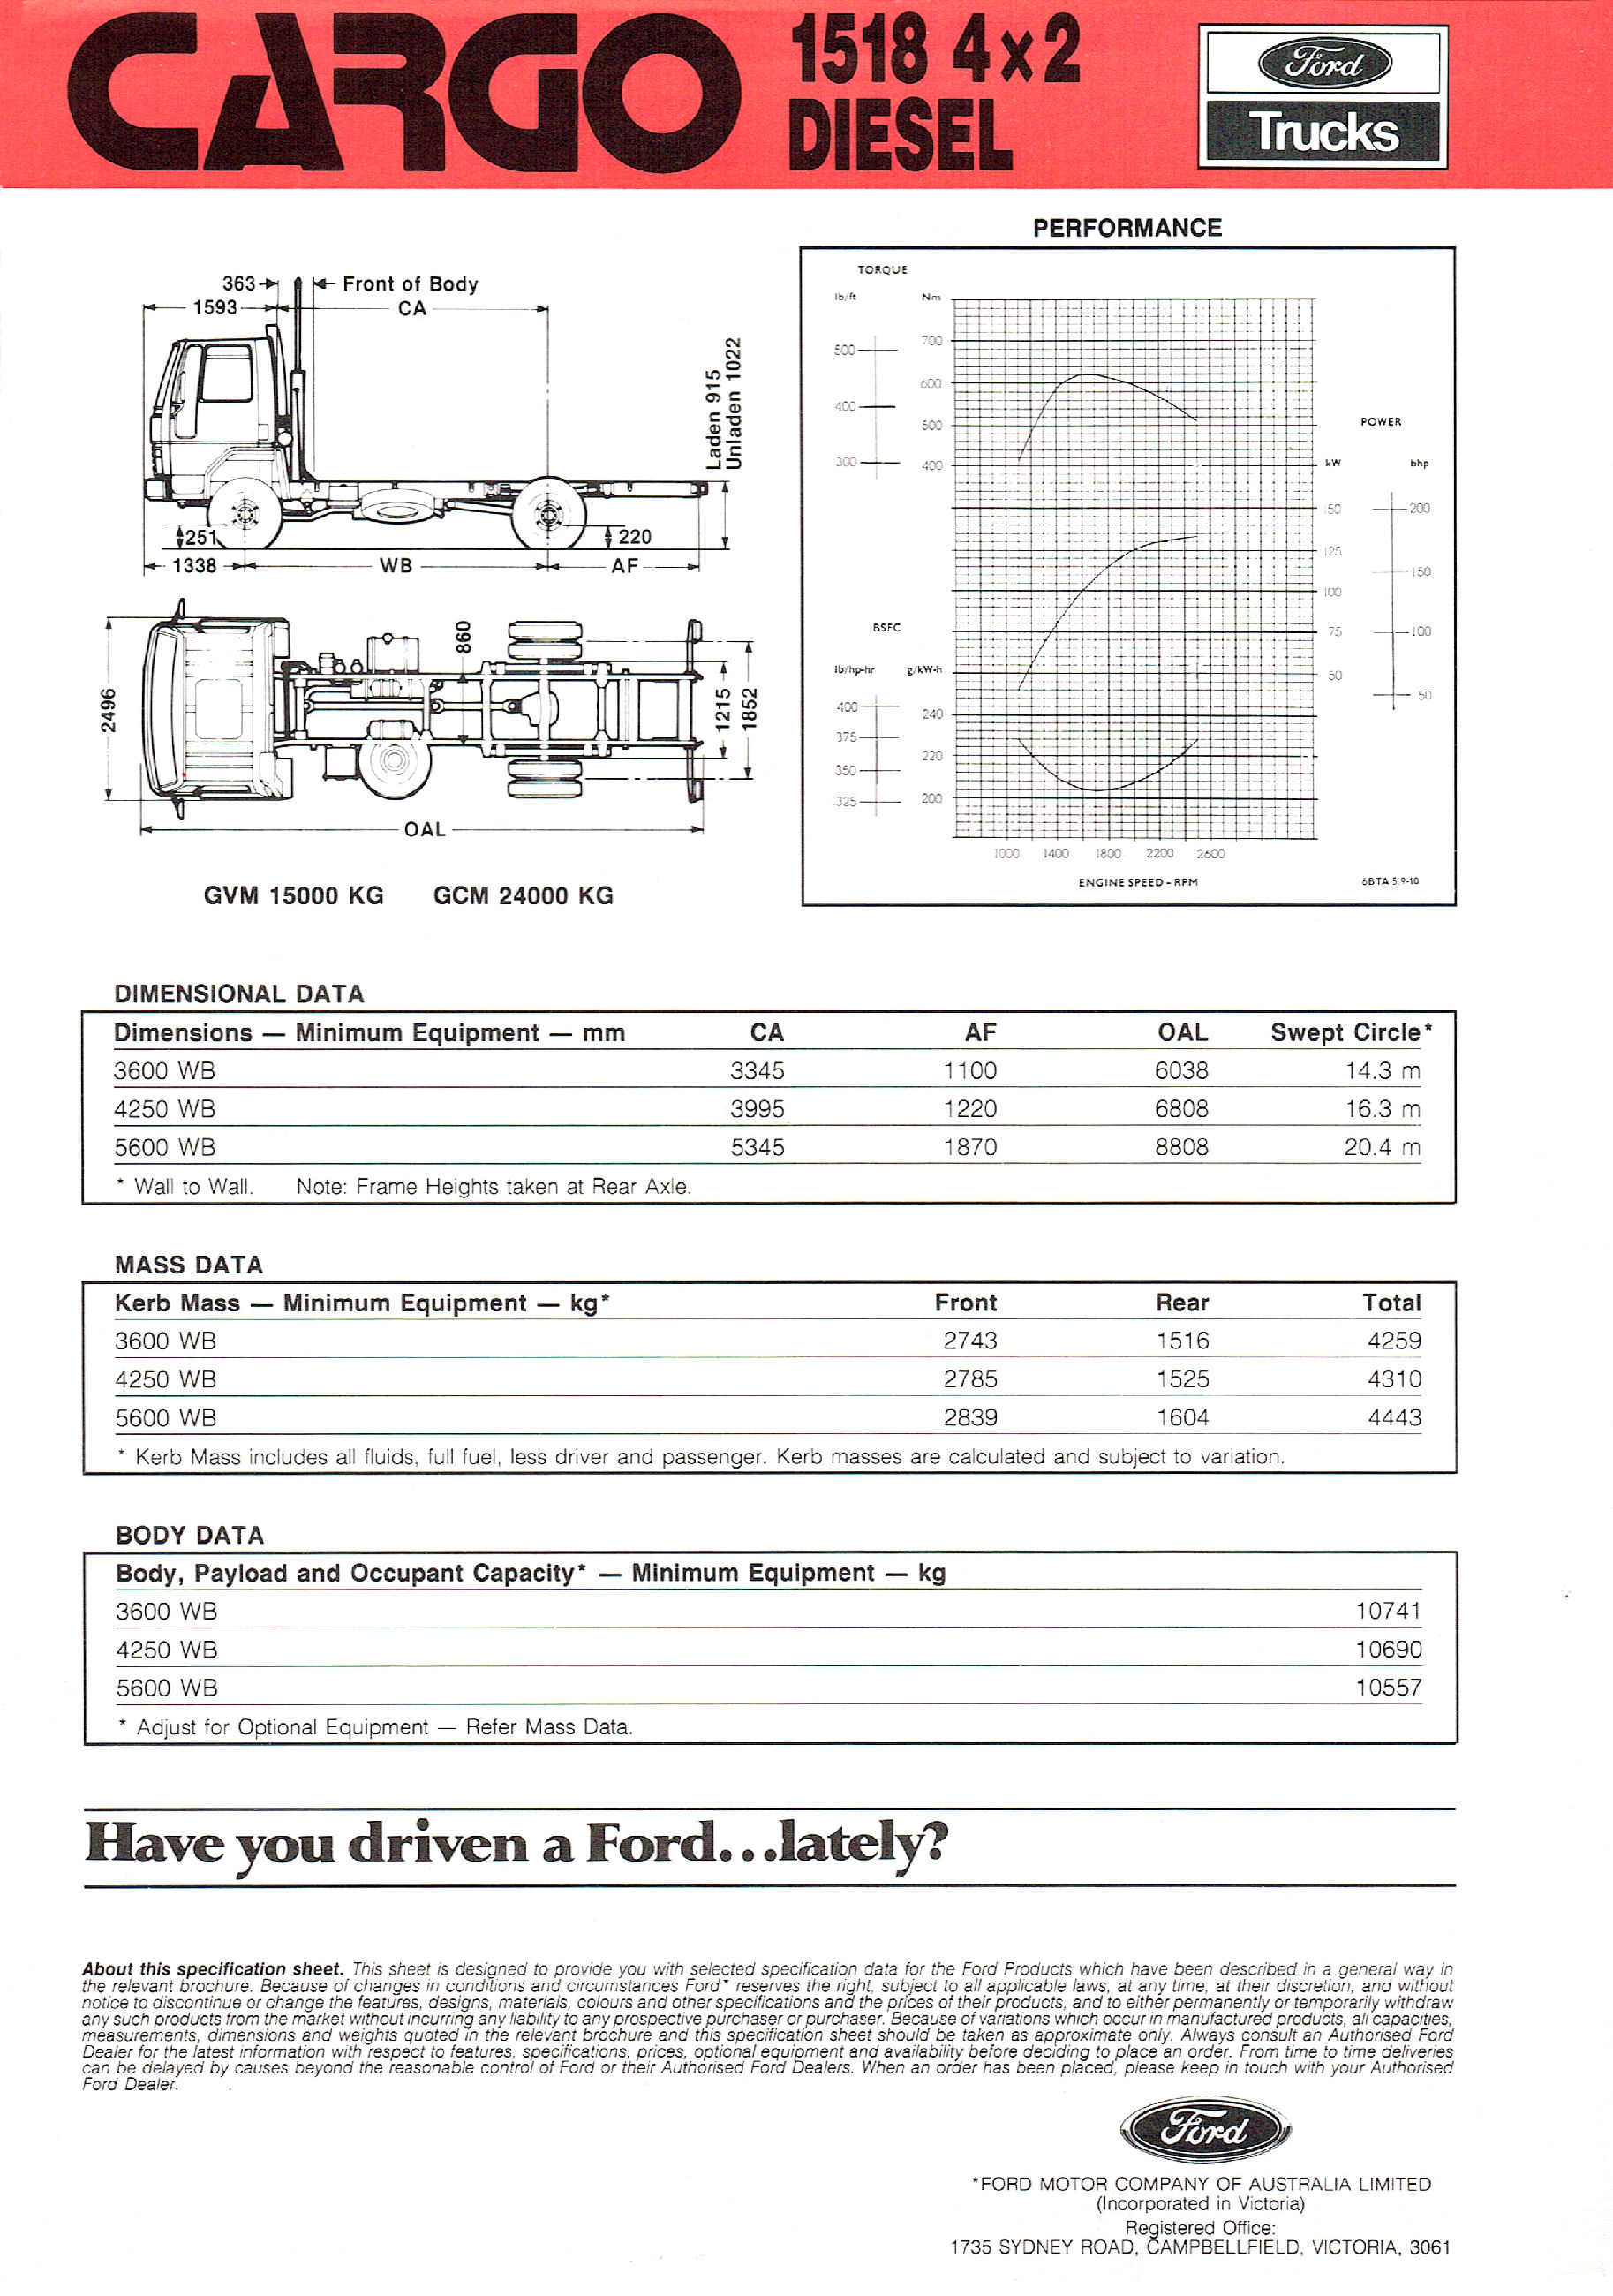 1990 Ford Cargo 1518 Diesel (Aus)-01.jpg-2022-12-7 13.54.58